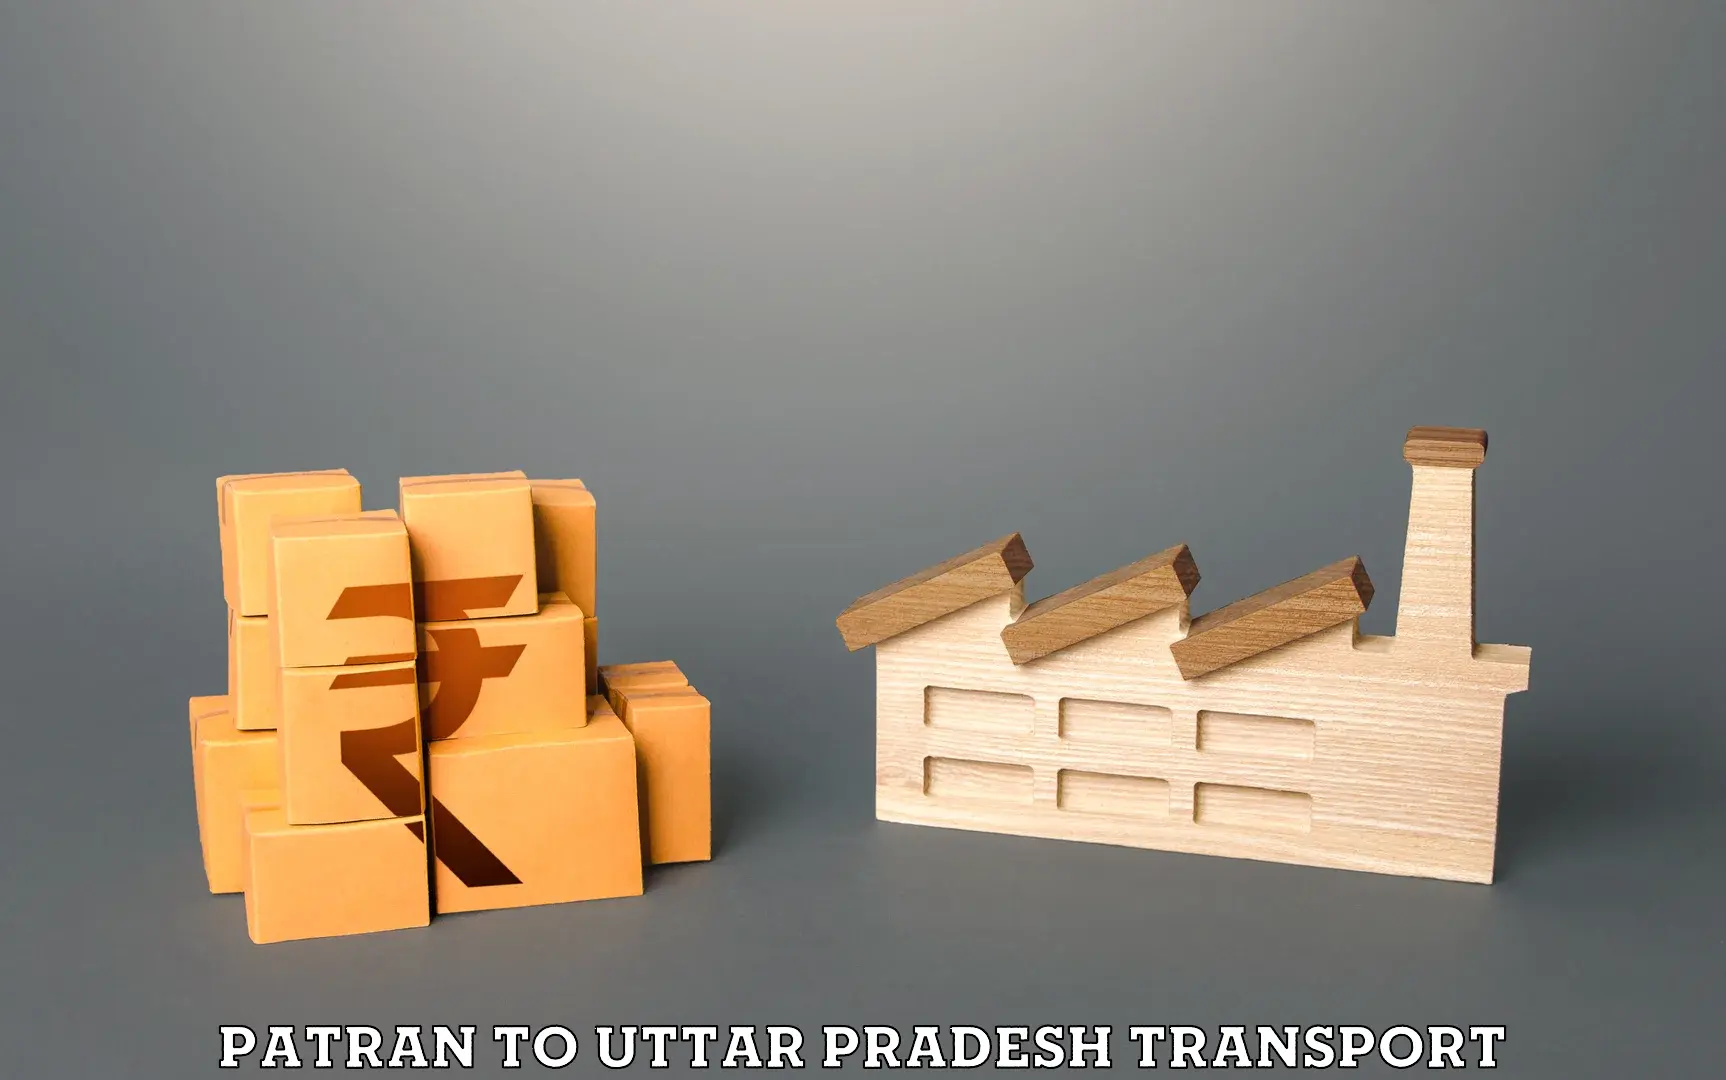 Commercial transport service Patran to Uttar Pradesh